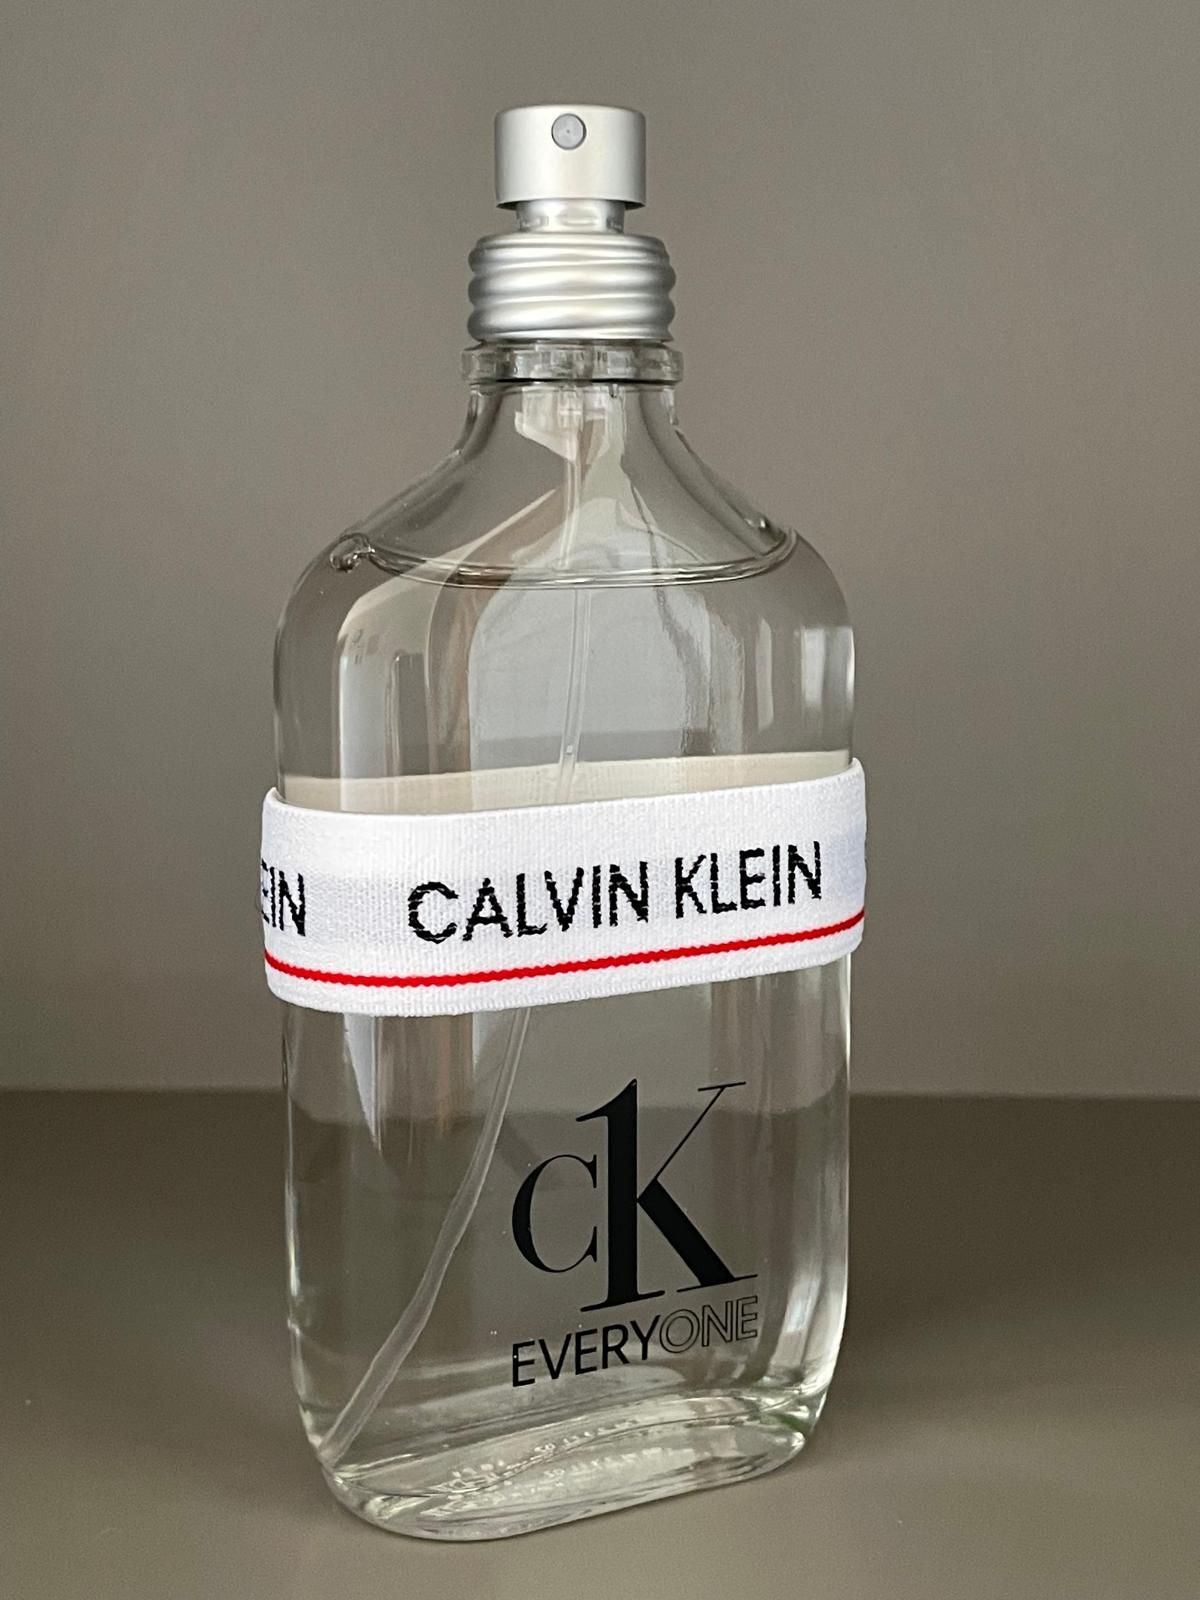 Calvin Klein CK everyone edt 100ml